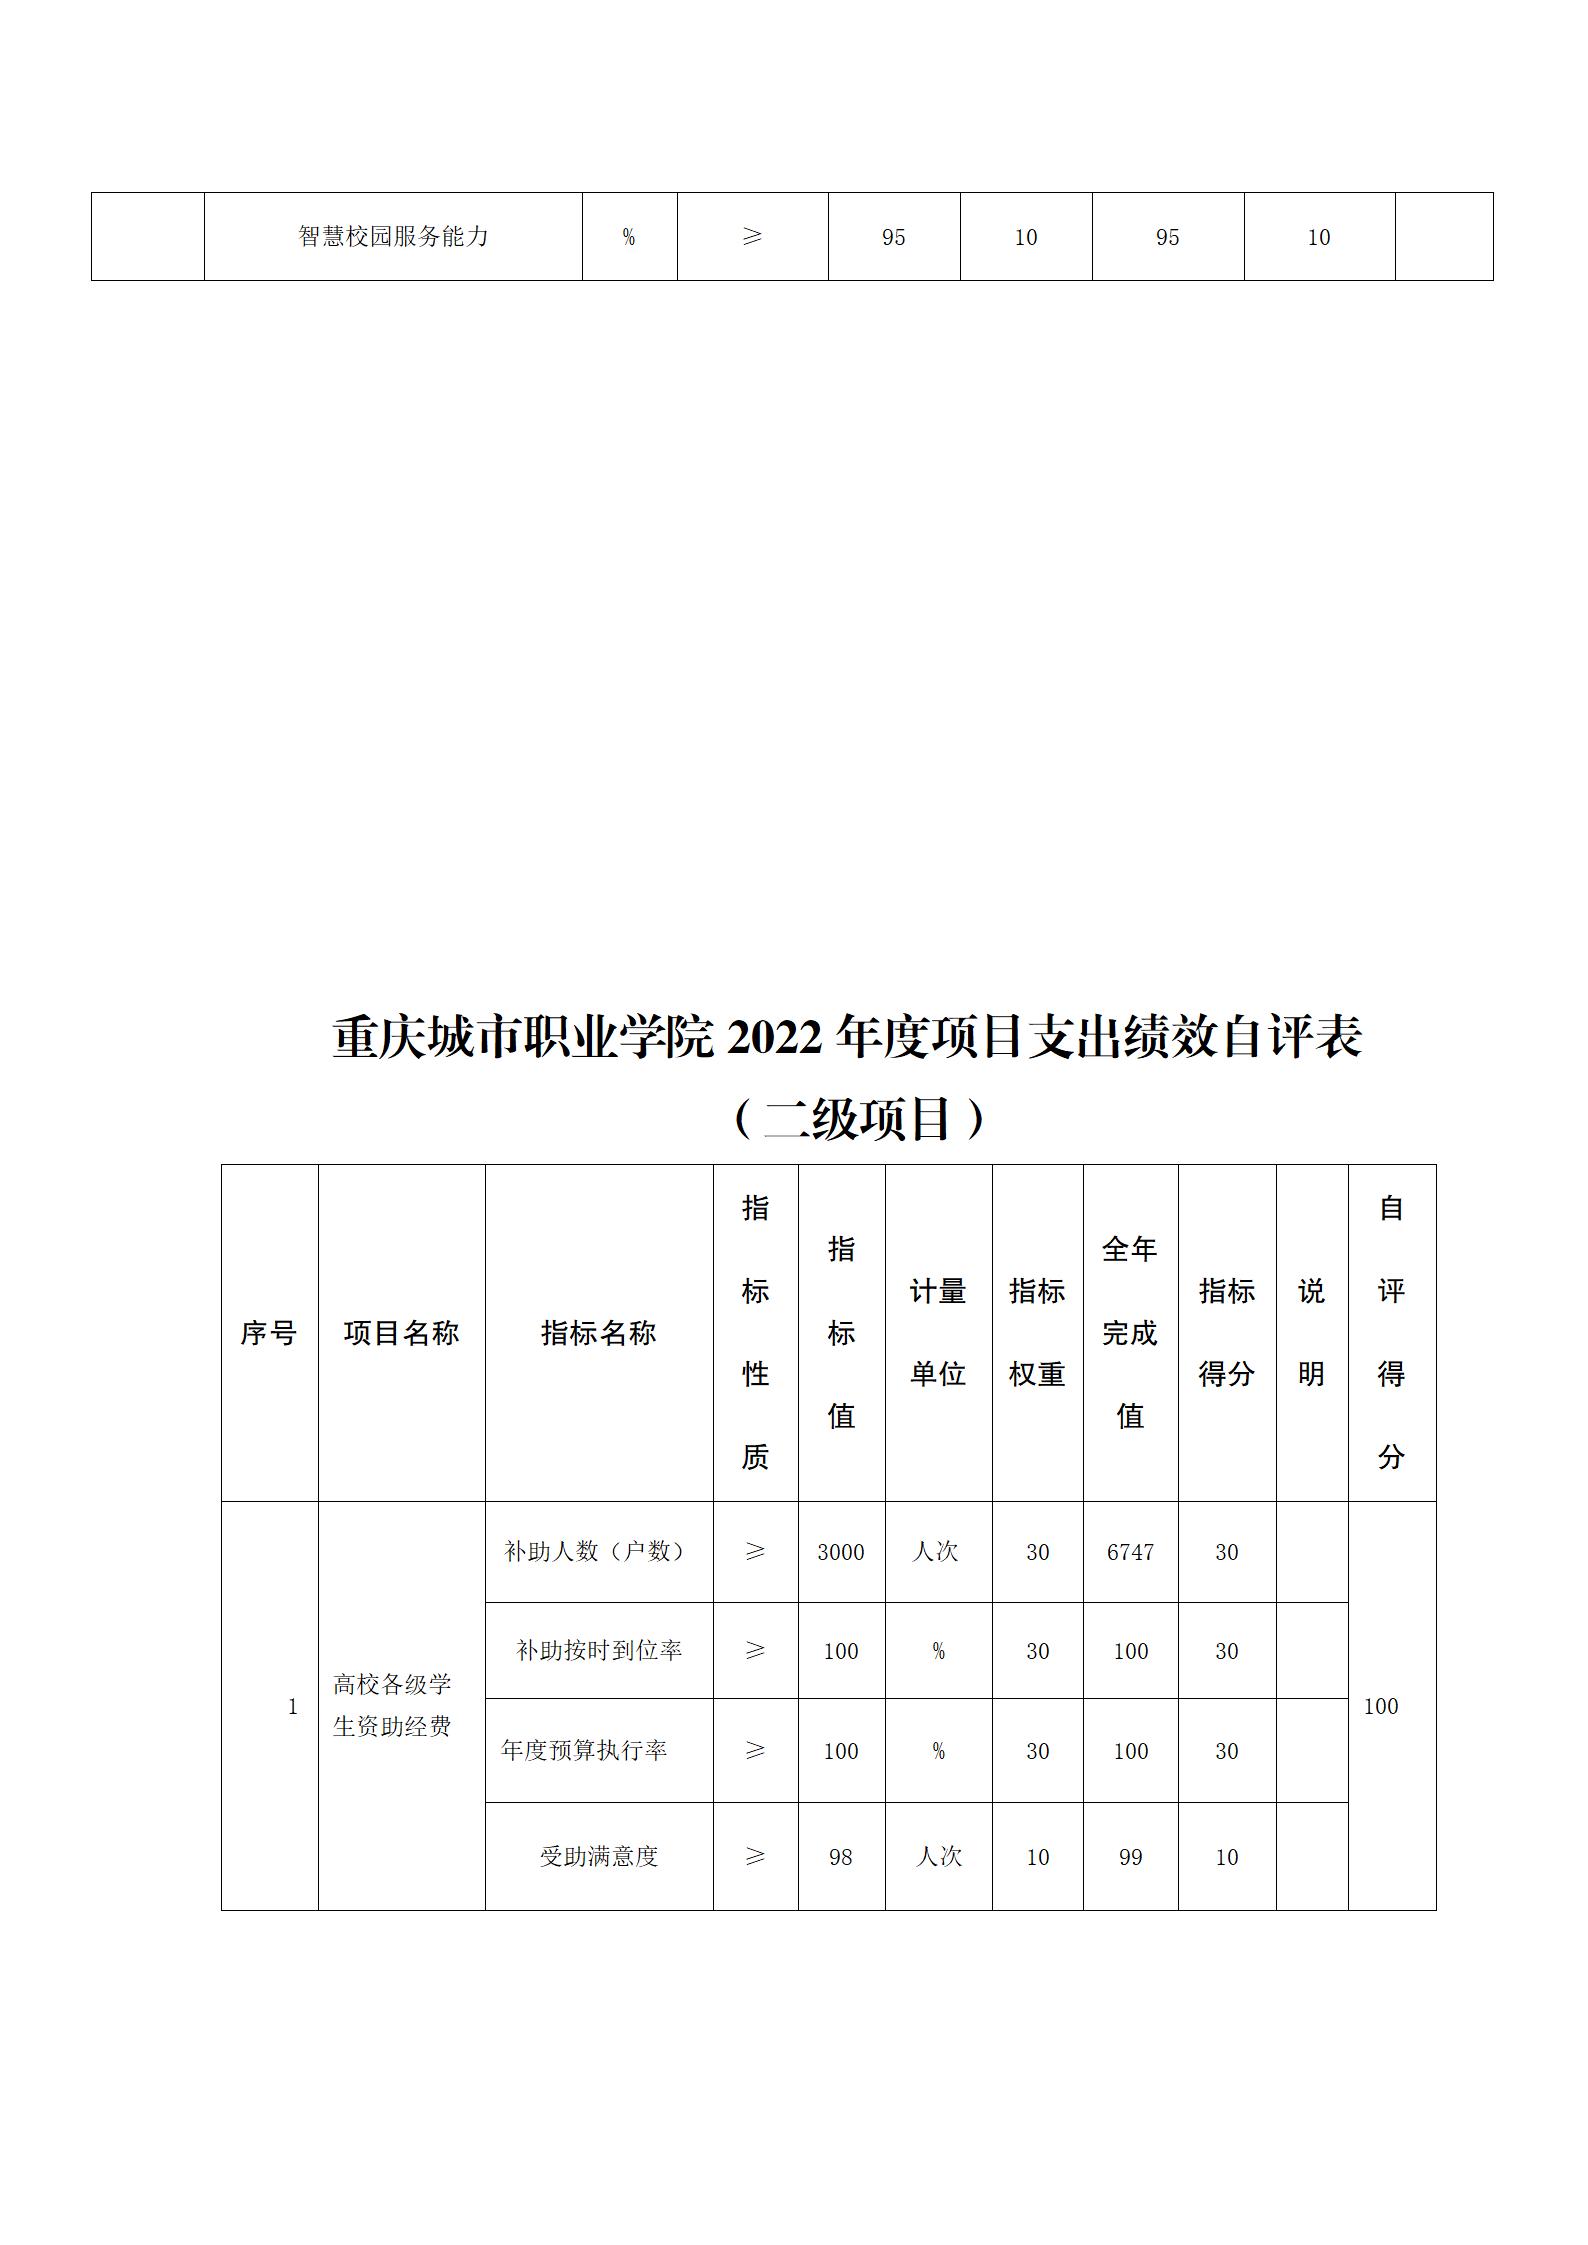 重庆城市职业学院决算公开说明（社会公开）_10.jpg